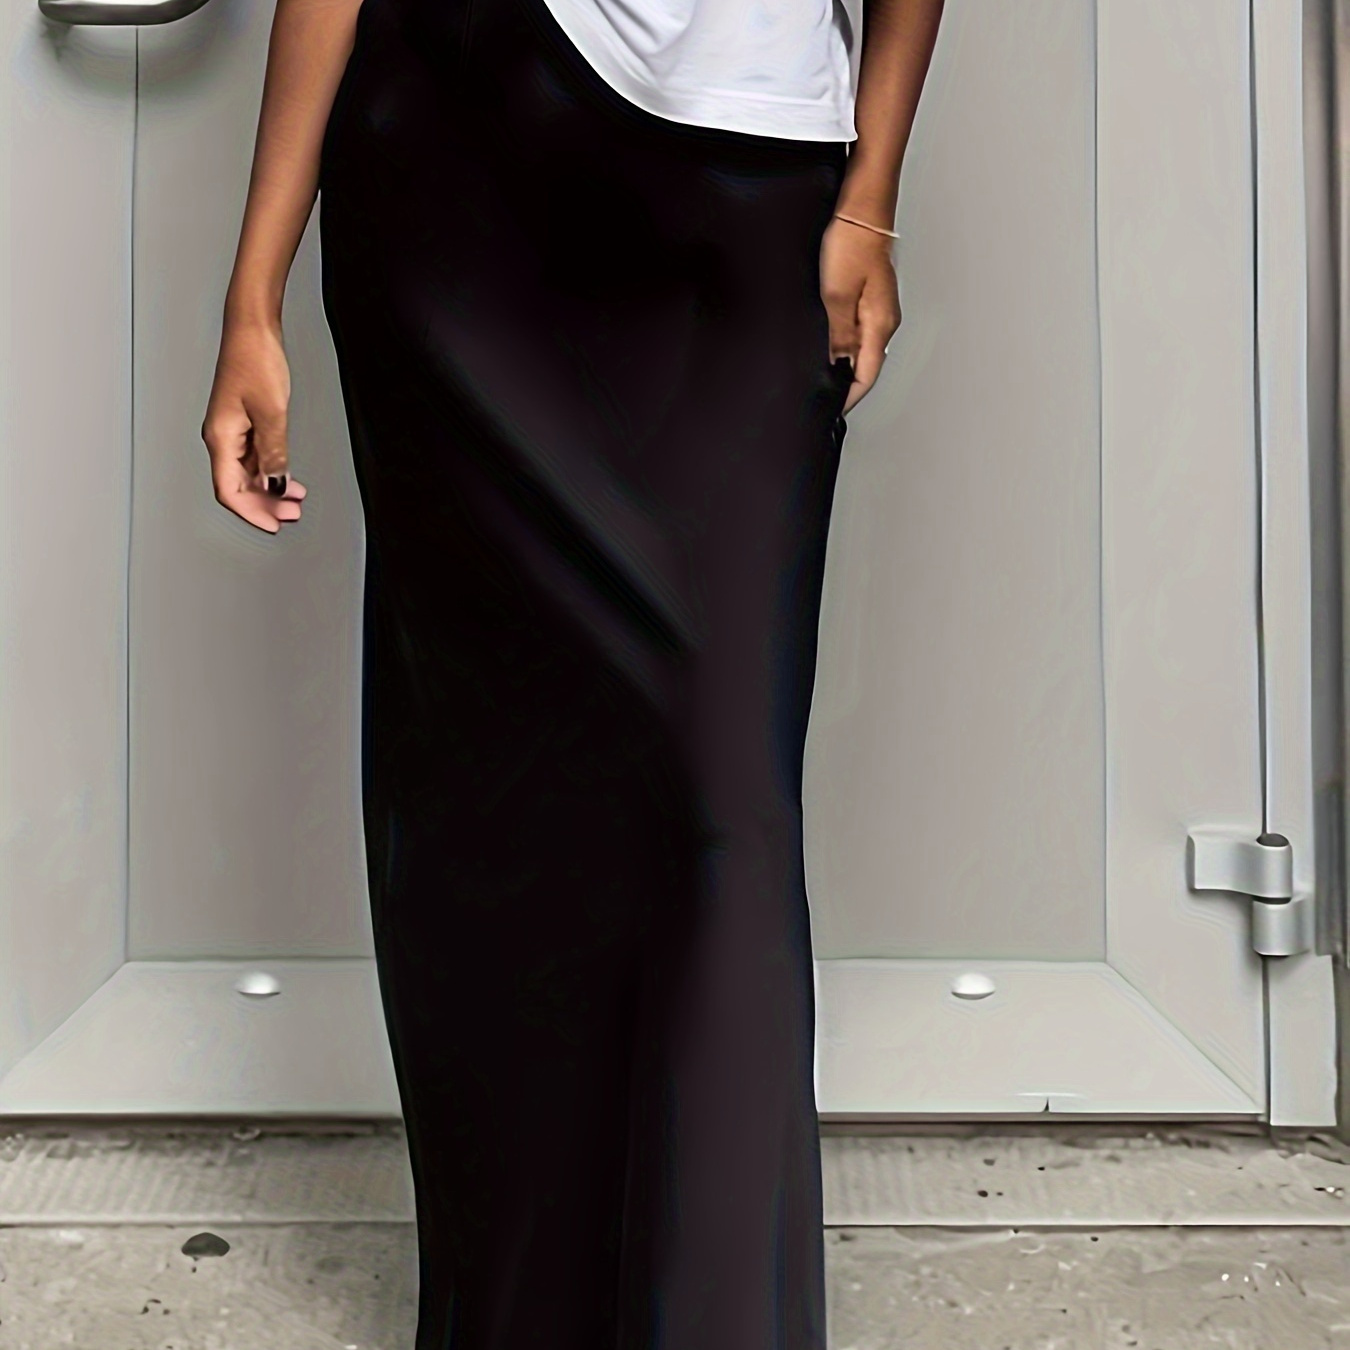 

Ankle Length Sheath Skirt, Elegant High Waist Solid Color Skirt For Spring & Summer, Women's Clothing